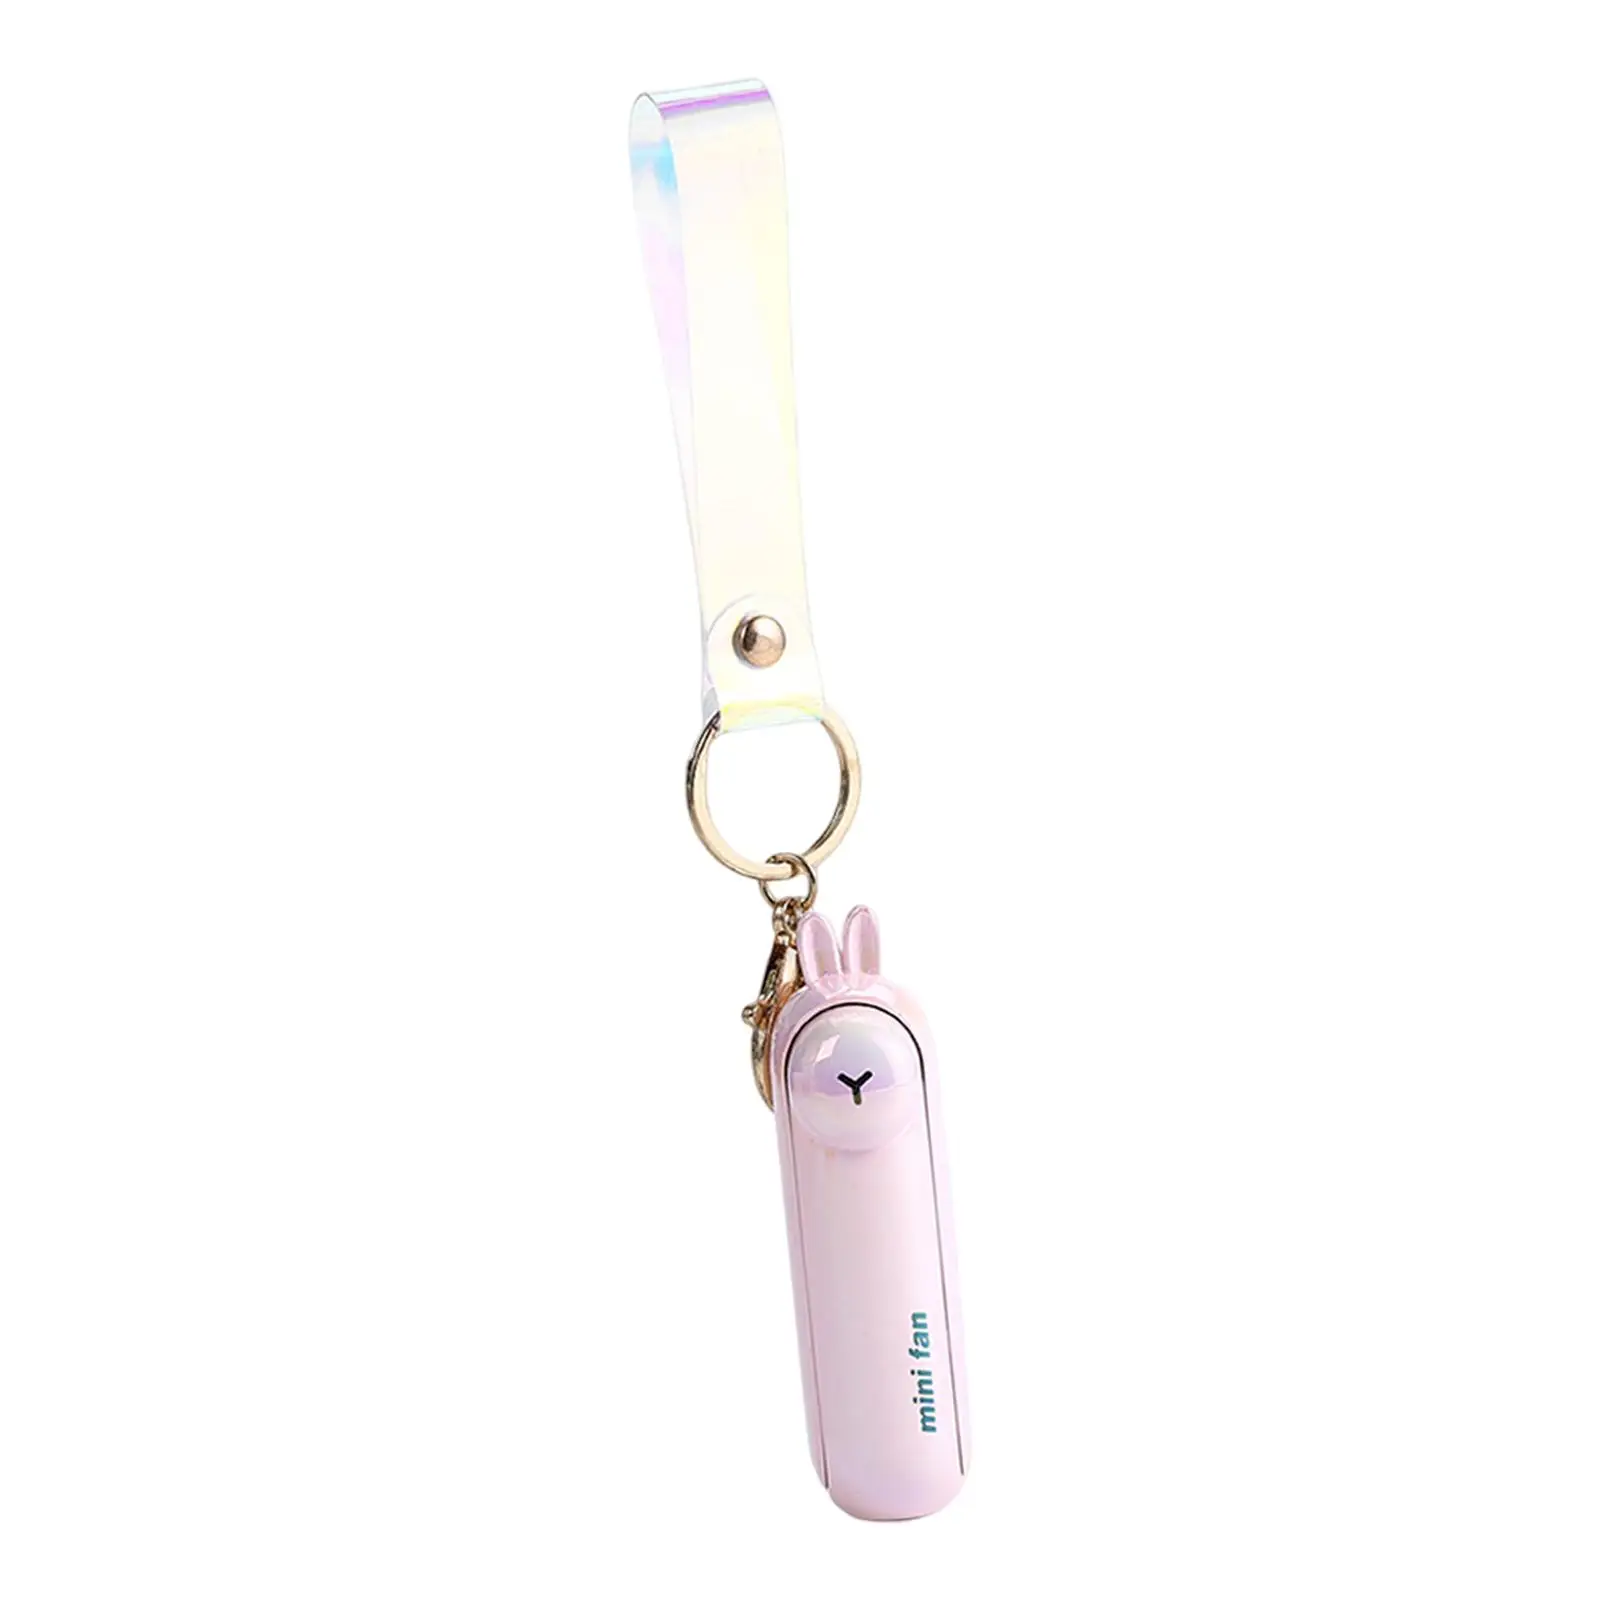 Keychain Fan Mini Fan 3 Speeds with Light USB Fan Small Pocket Fan Folding Personal Fan for Office Indoor Outdoor Sports